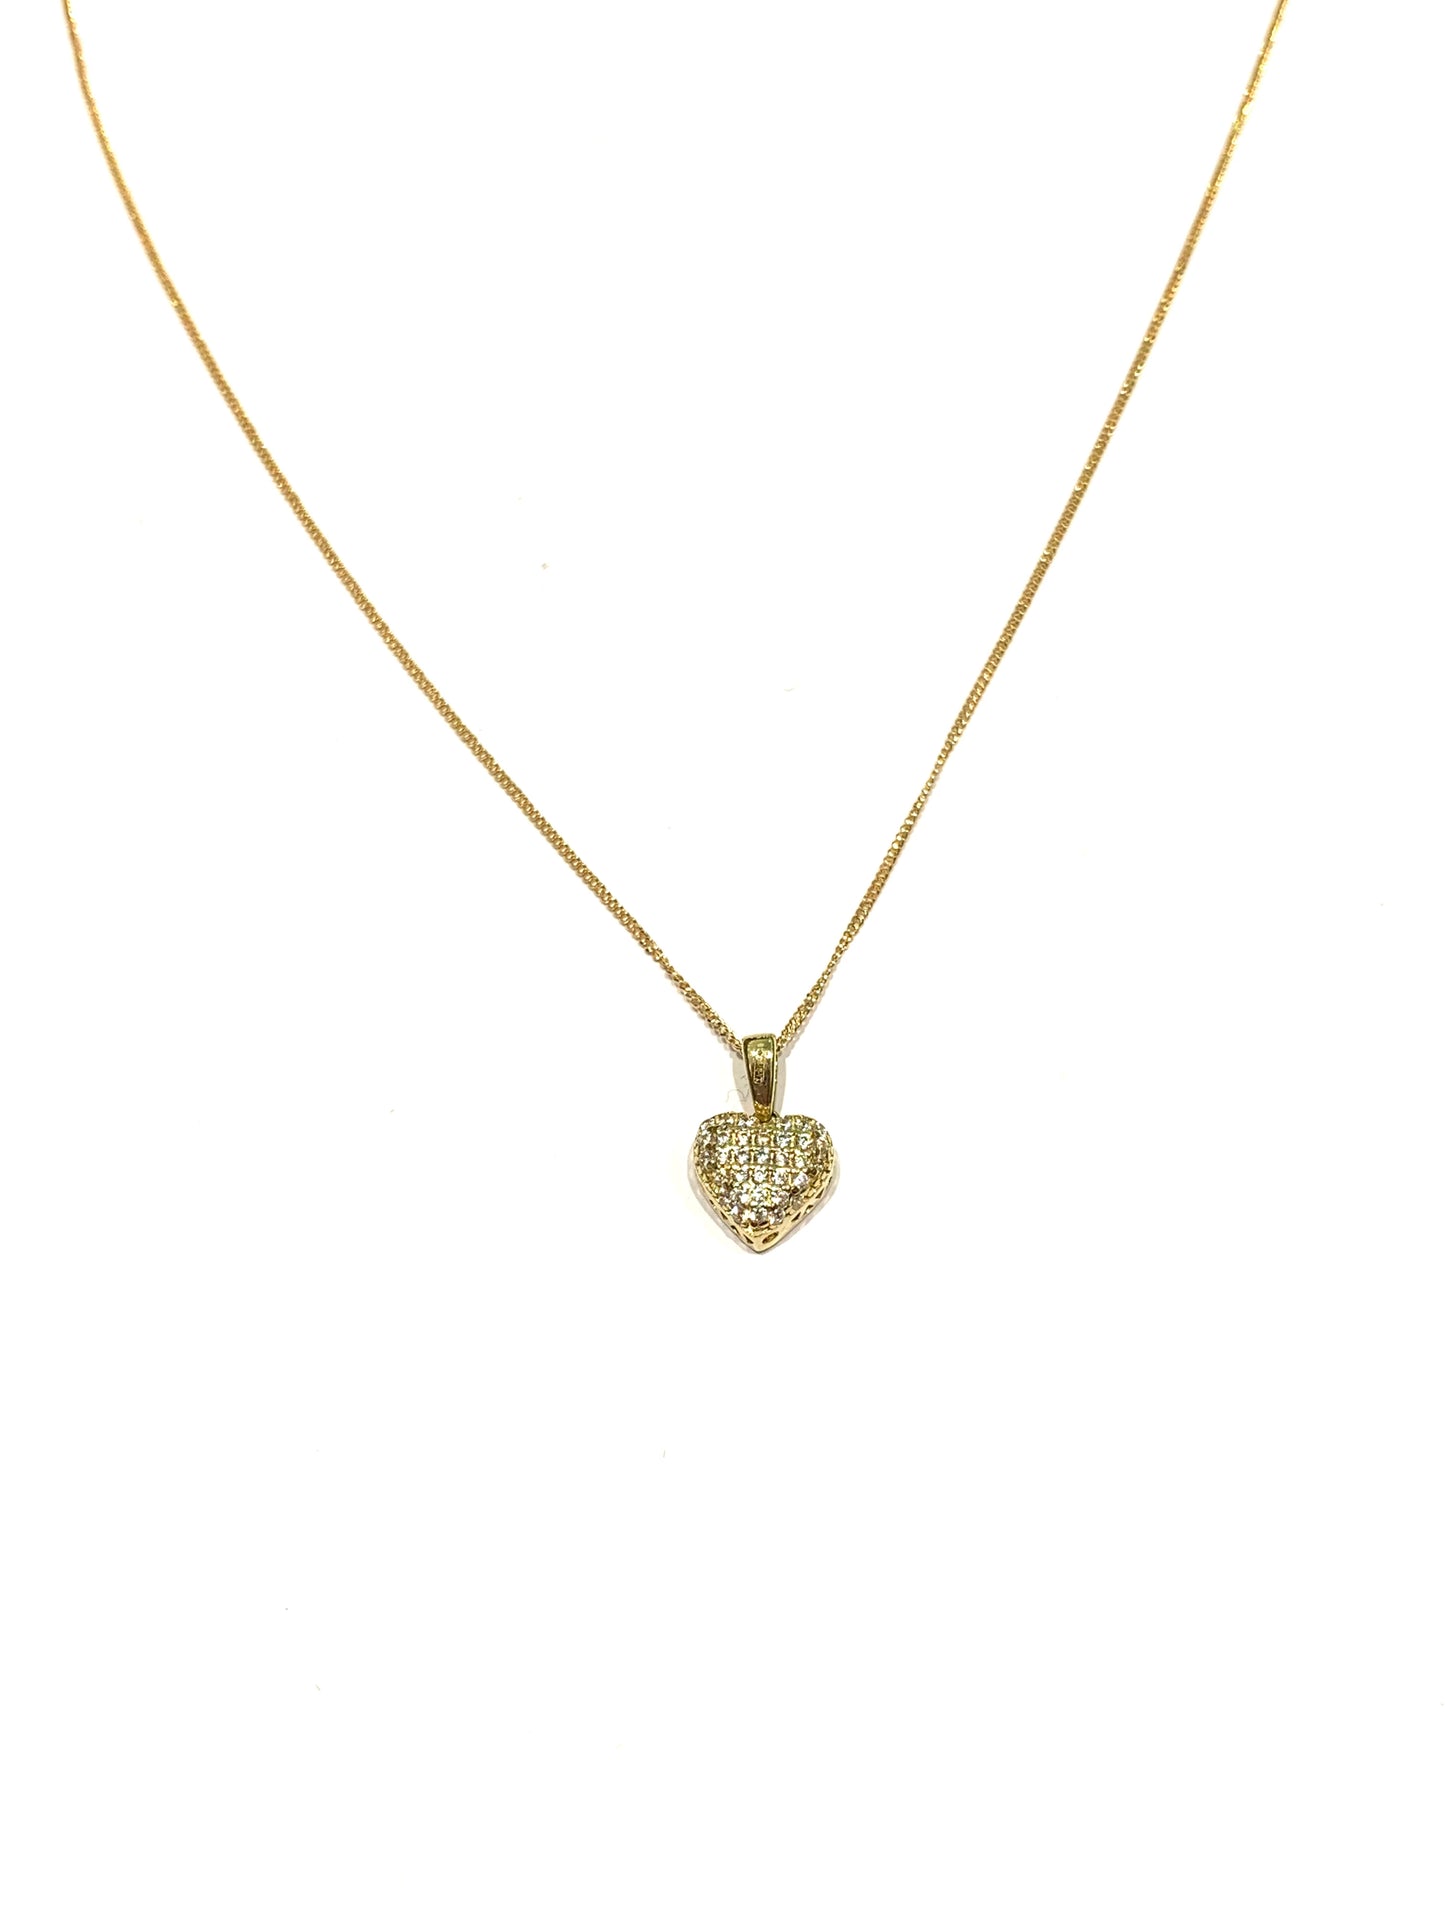 Collana in oro giallo 9kt con cuore ricoperto da zirconi.  Lunghezza catena 41 cm.  Dimensione cuore 1,3 cm incluso anellino.  